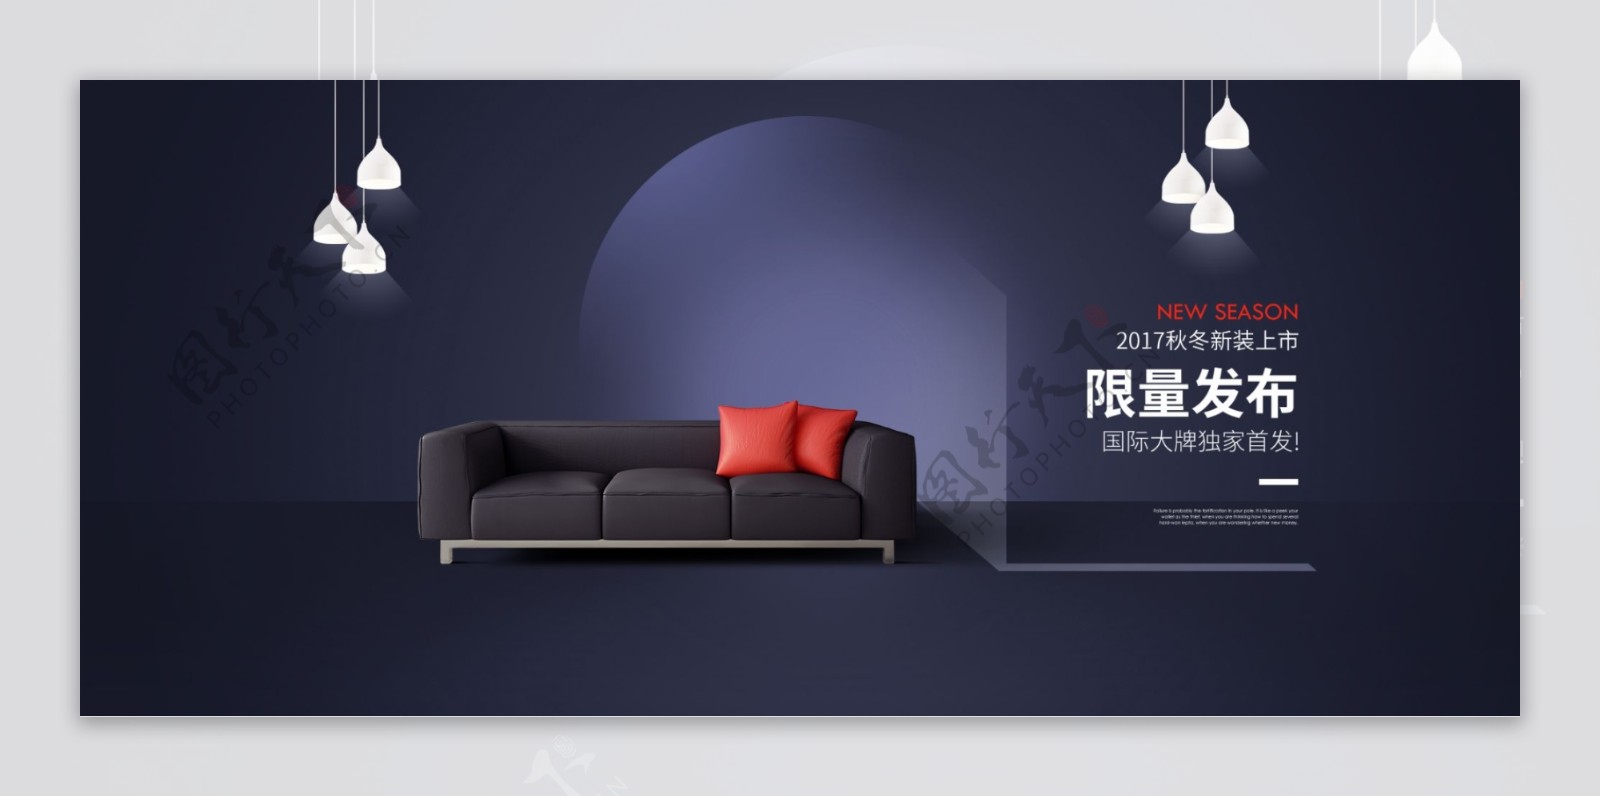 黑色简约时尚新品上市沙发促销淘宝电商海报